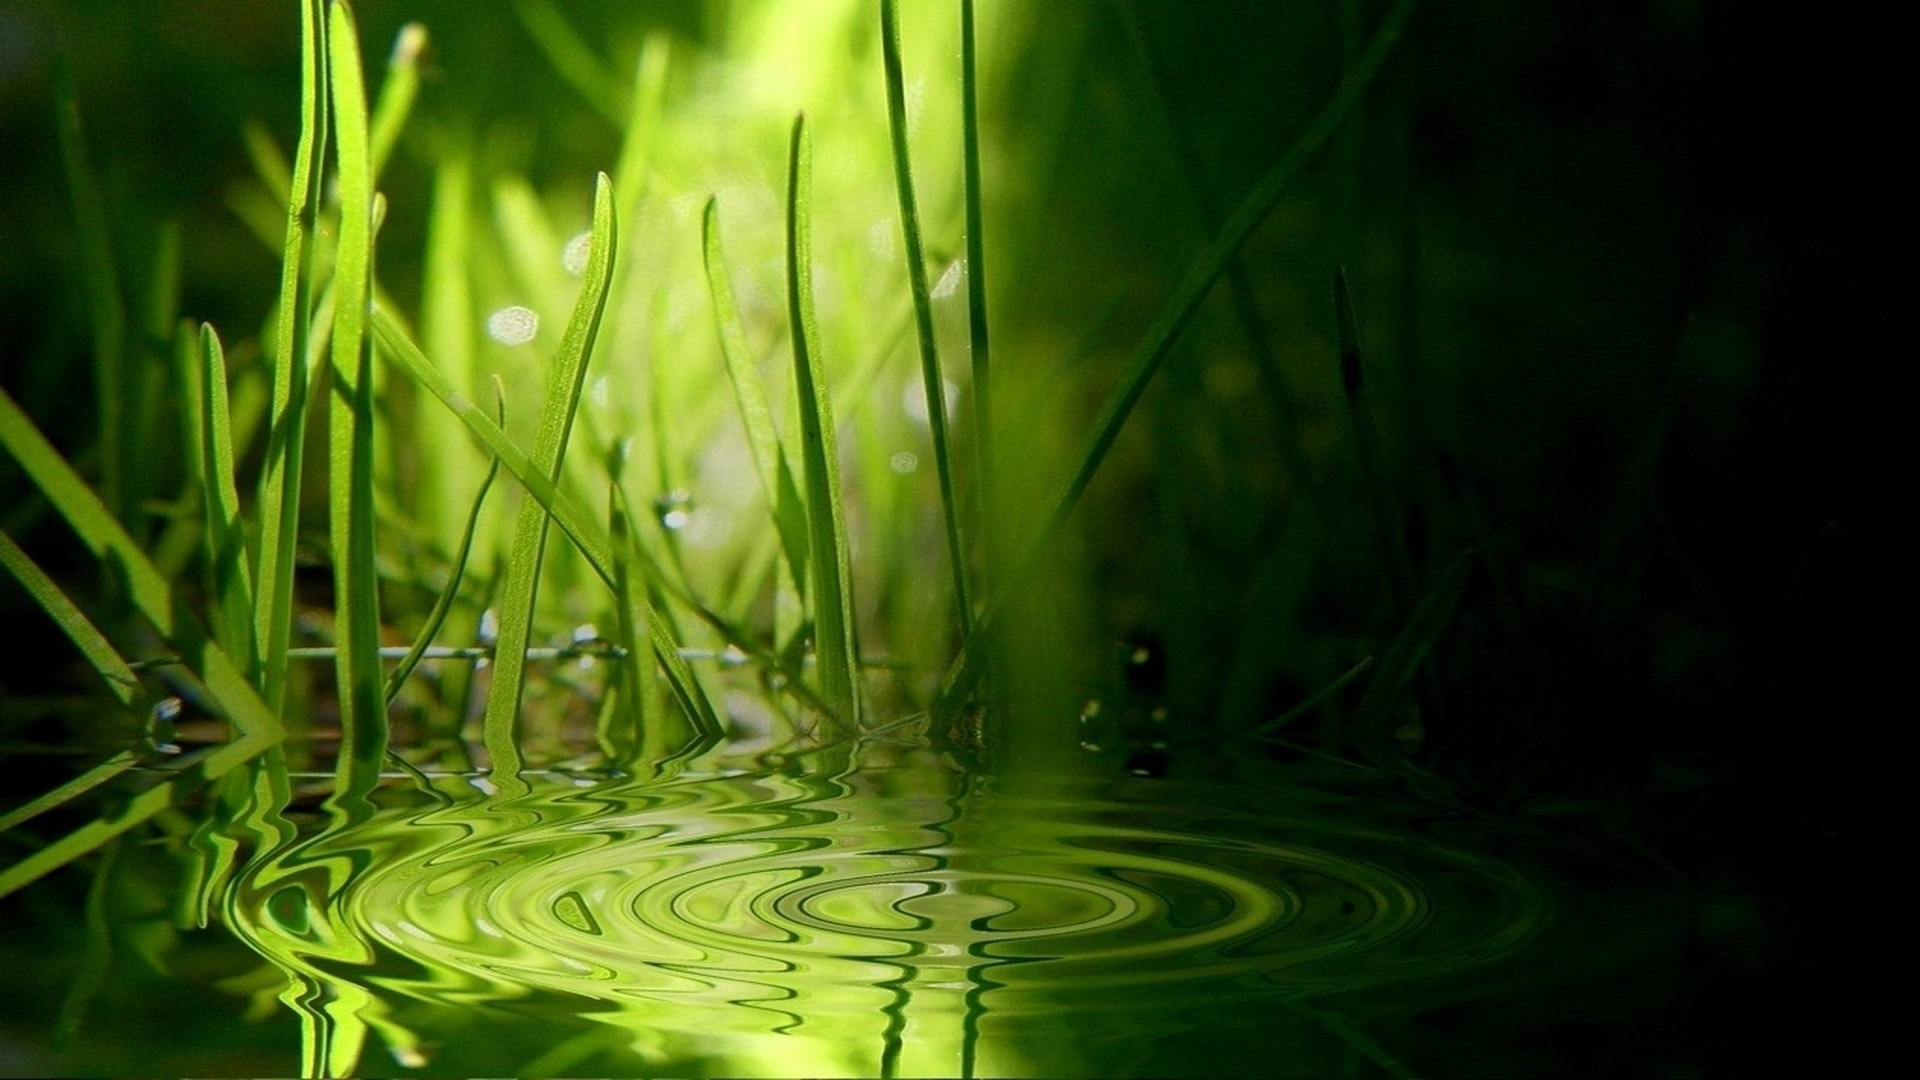 water, nature, grass - desktop wallpaper